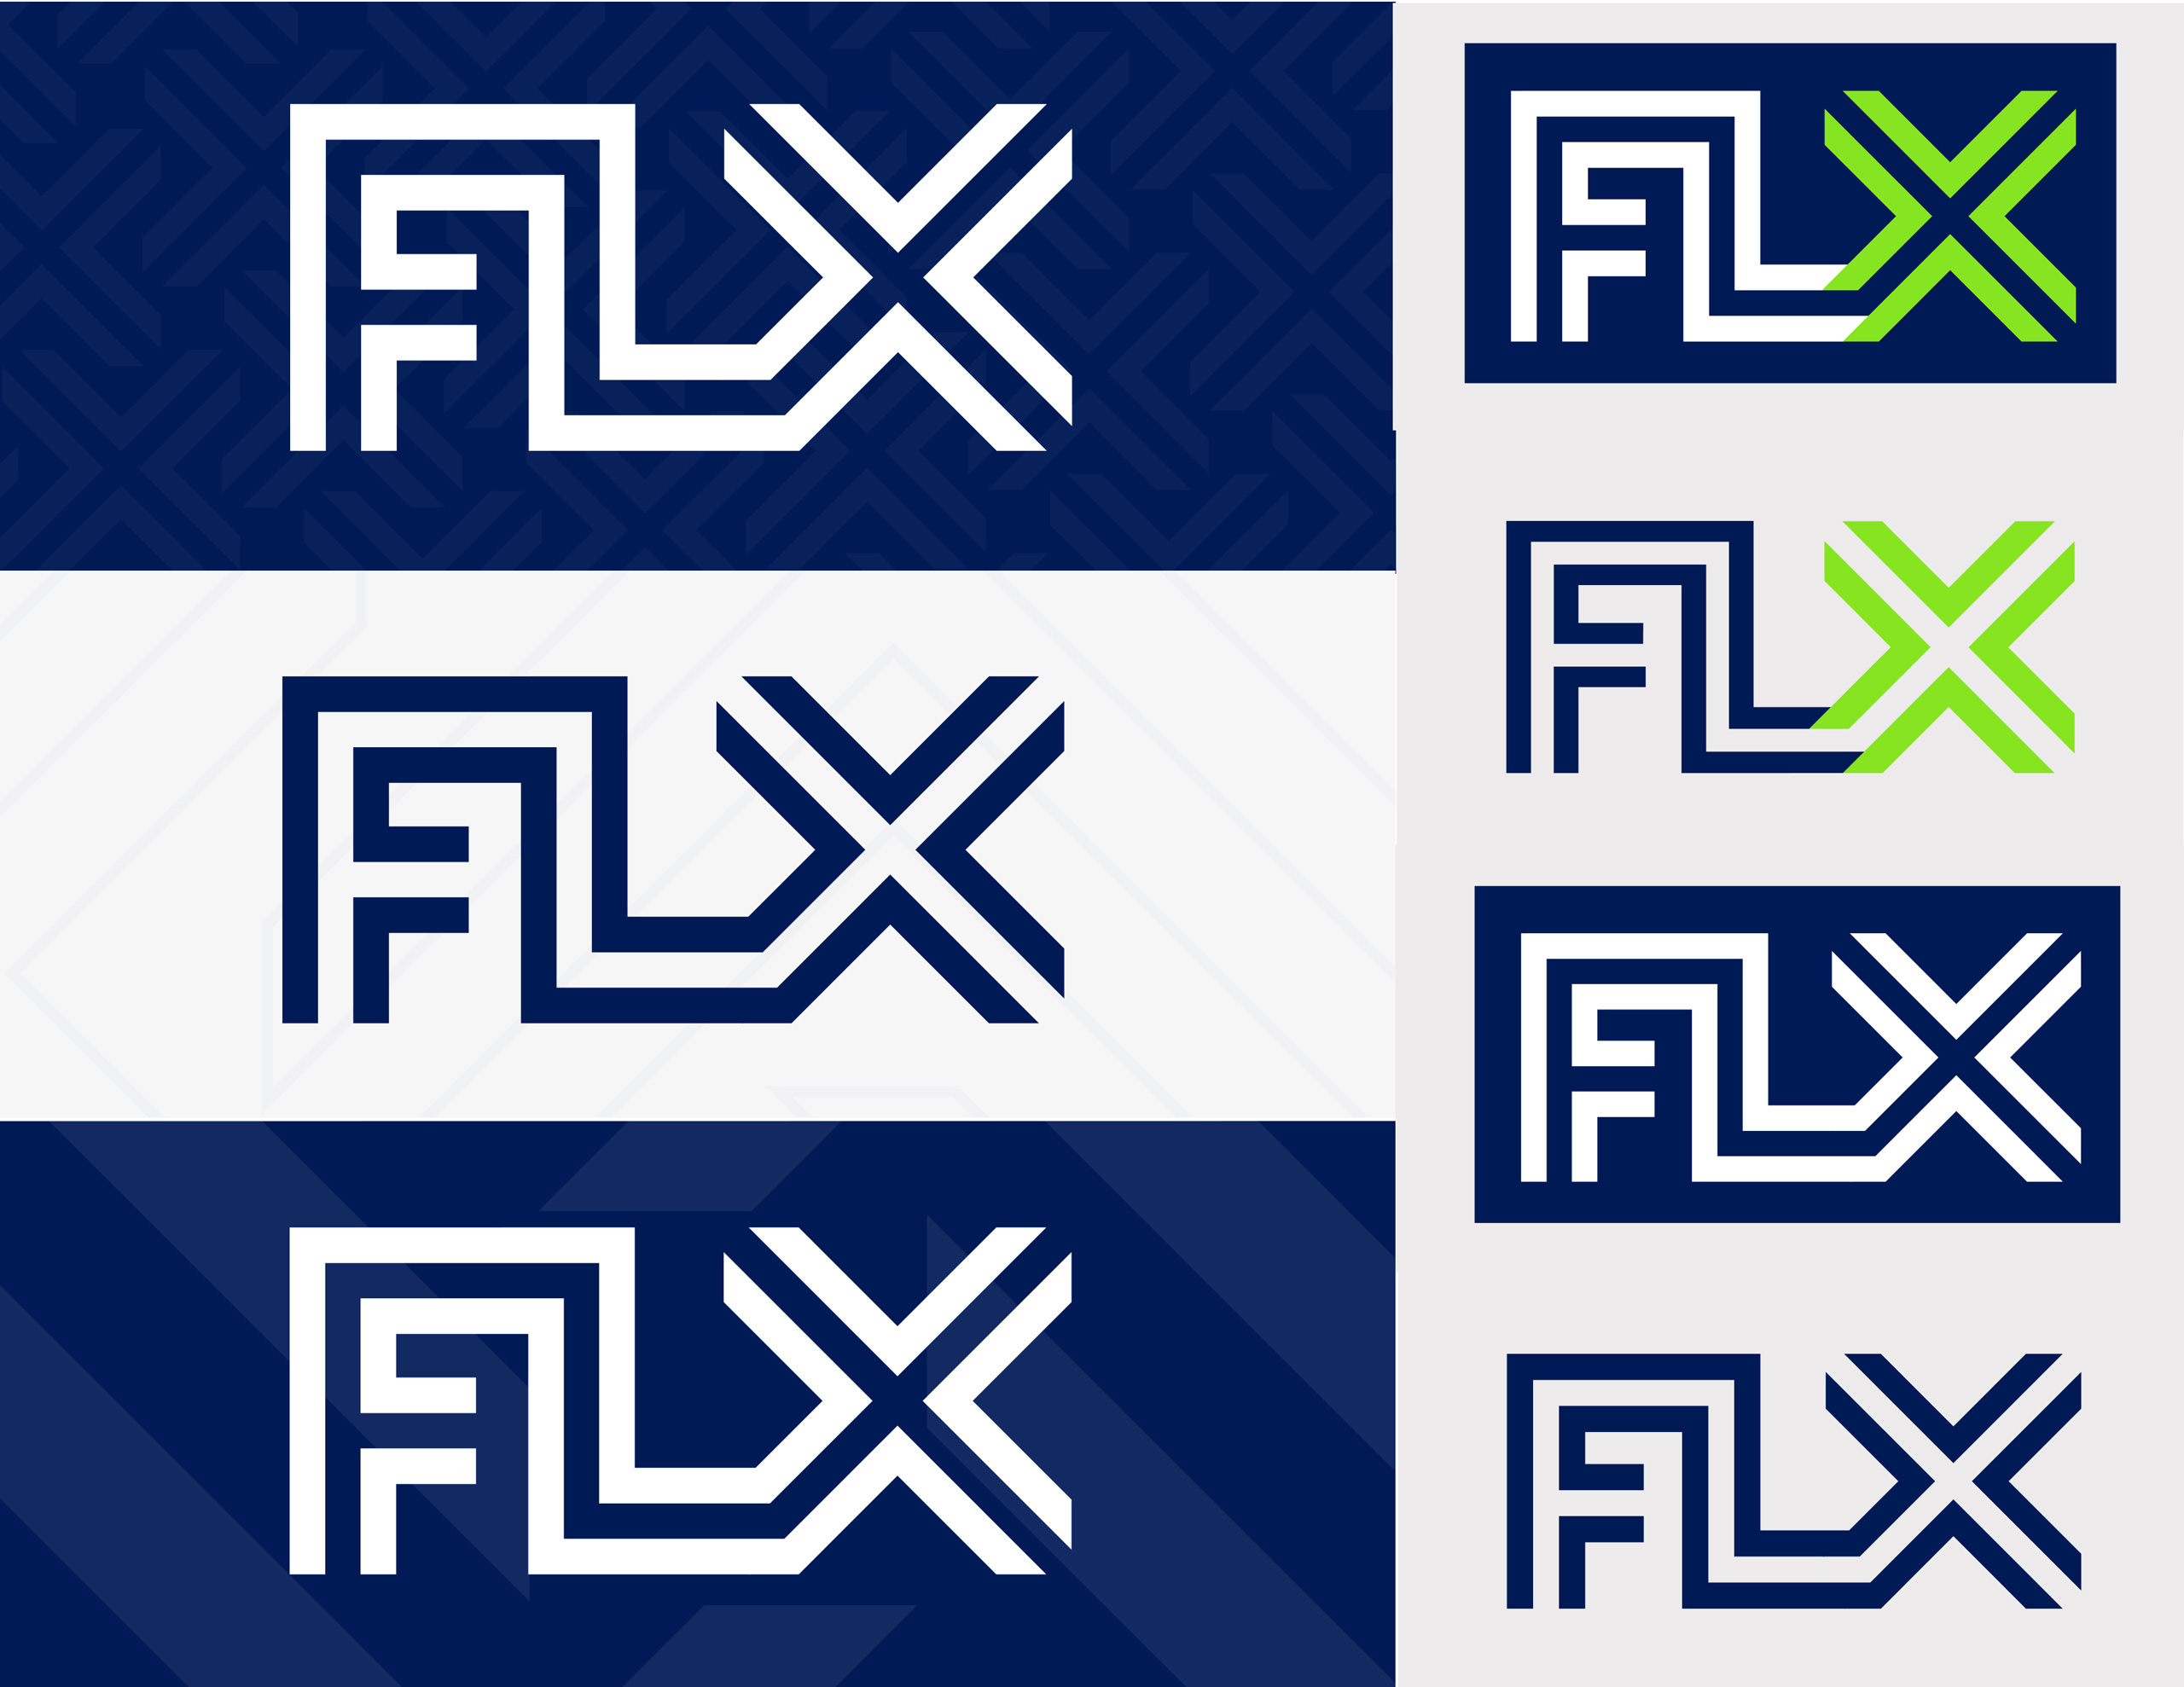 FLX_Logos_opt